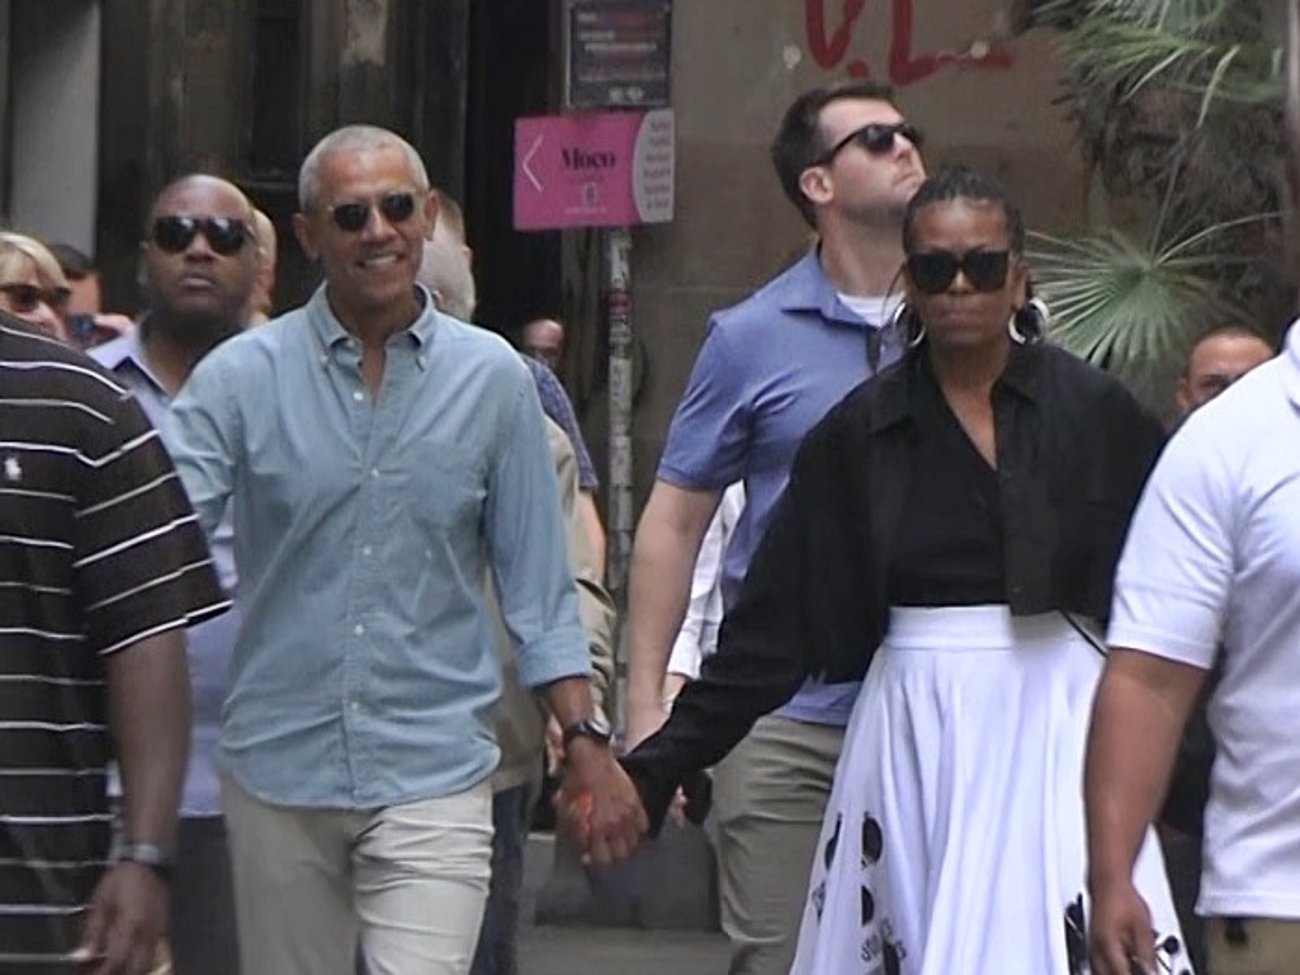 Barack et Michelle Obama, un amour qui se promène à Barcelone